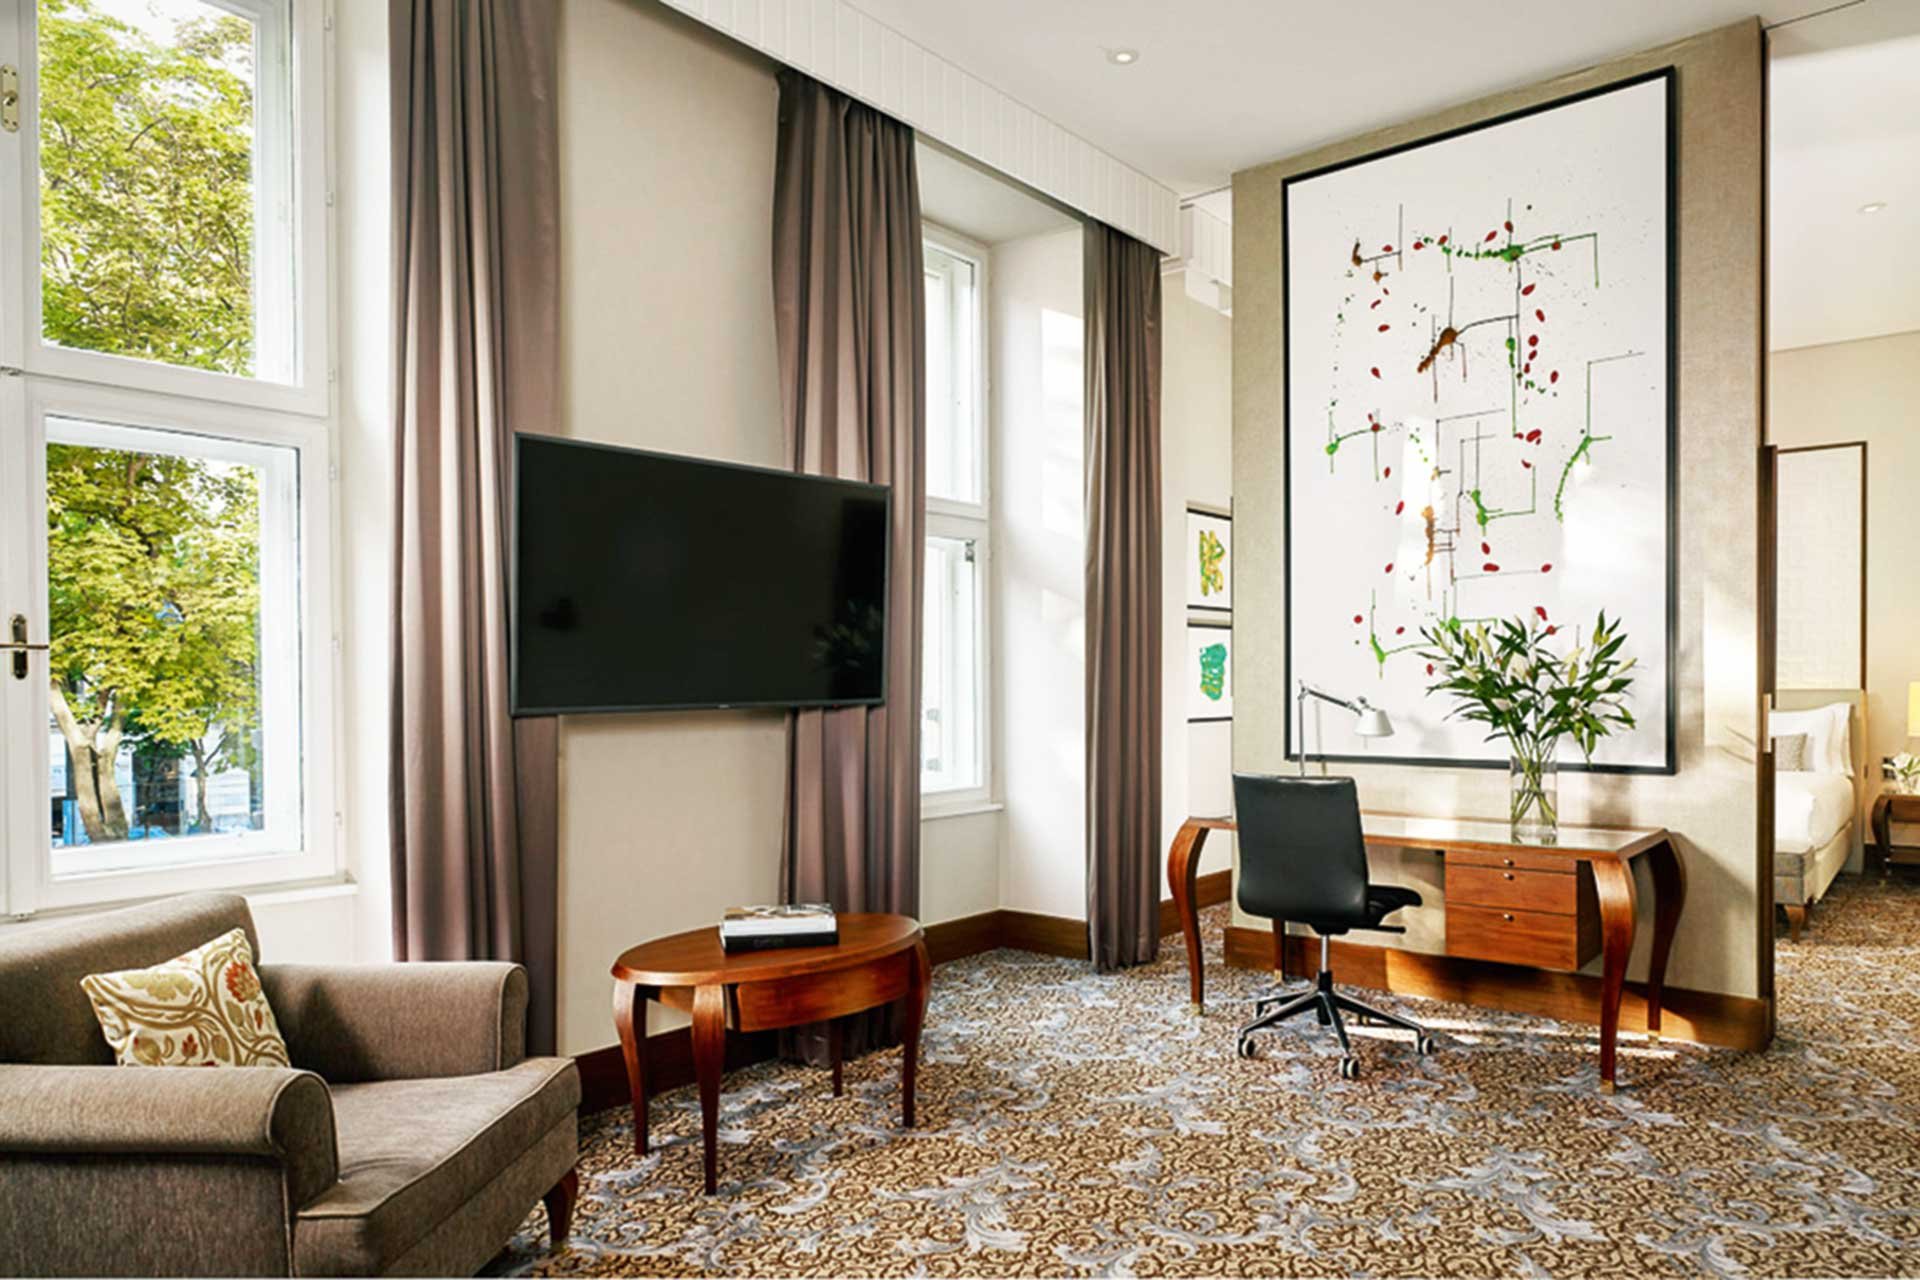 In allen Bereichen des Hotels: eine Symbiose aus Wiener Tradition und moderner Wohnkultur.